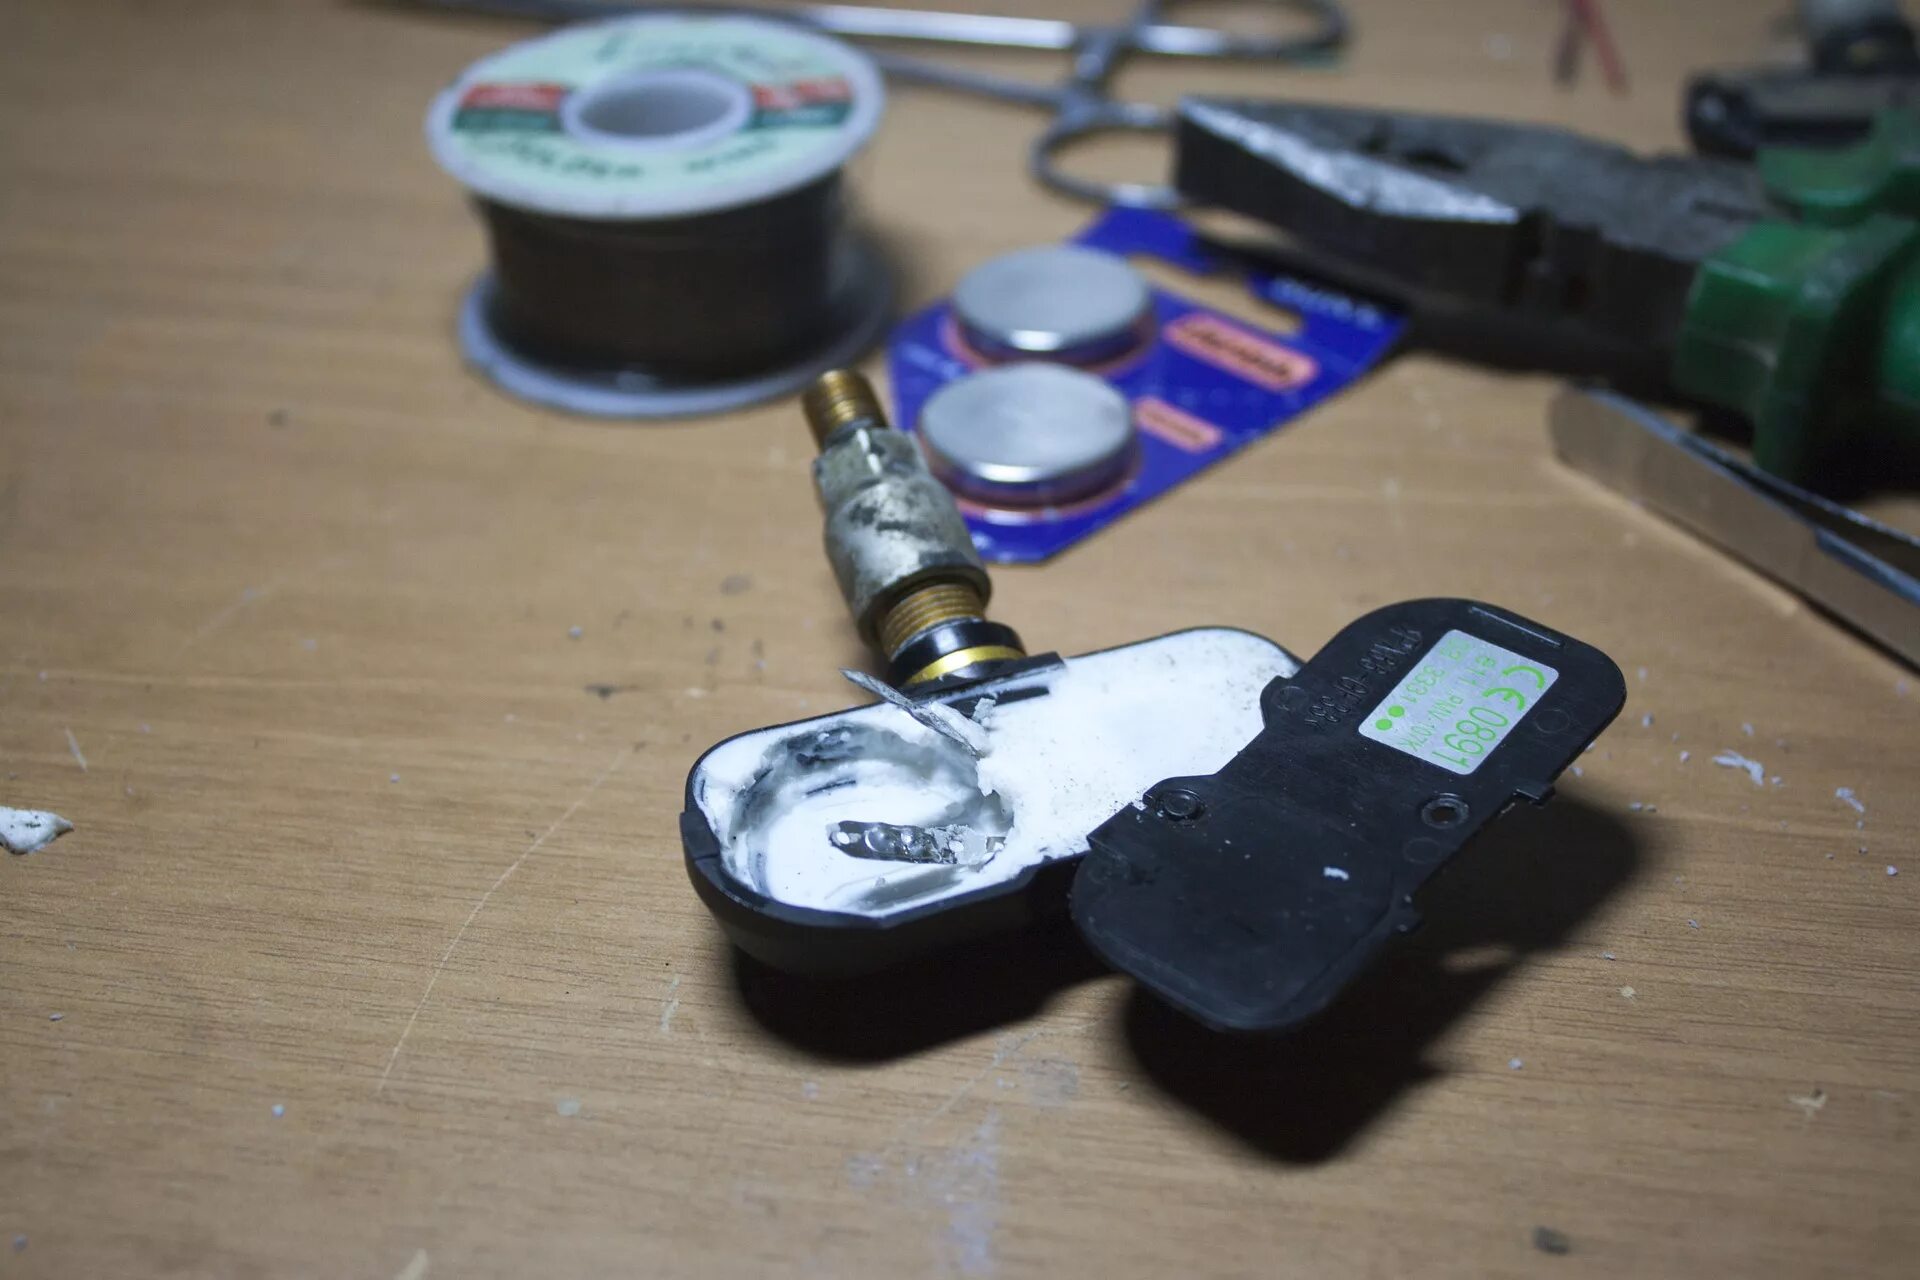 Батарейка датчик давления Outlander 3. 1632 Батарейка датчик давления шин. A2c37819409 датчик давления шин. Датчики давления шин sp01. Не видит датчики давления